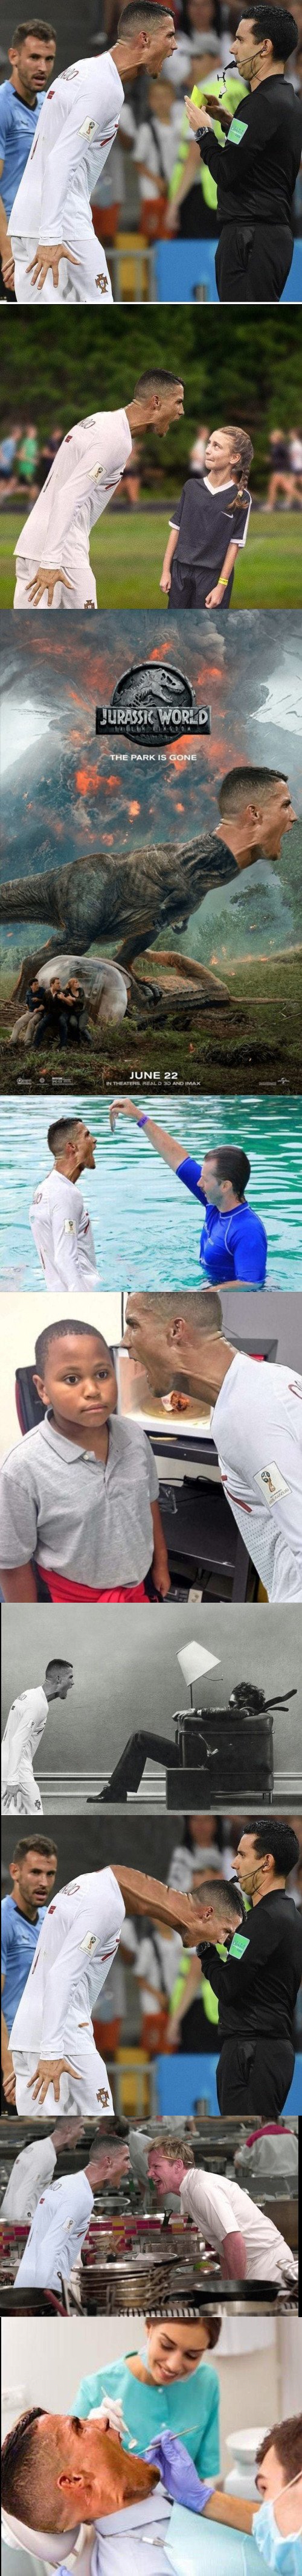 Meme_otros - Internet se llena de montajes con Cristiano Ronaldo enfadado con el árbitro